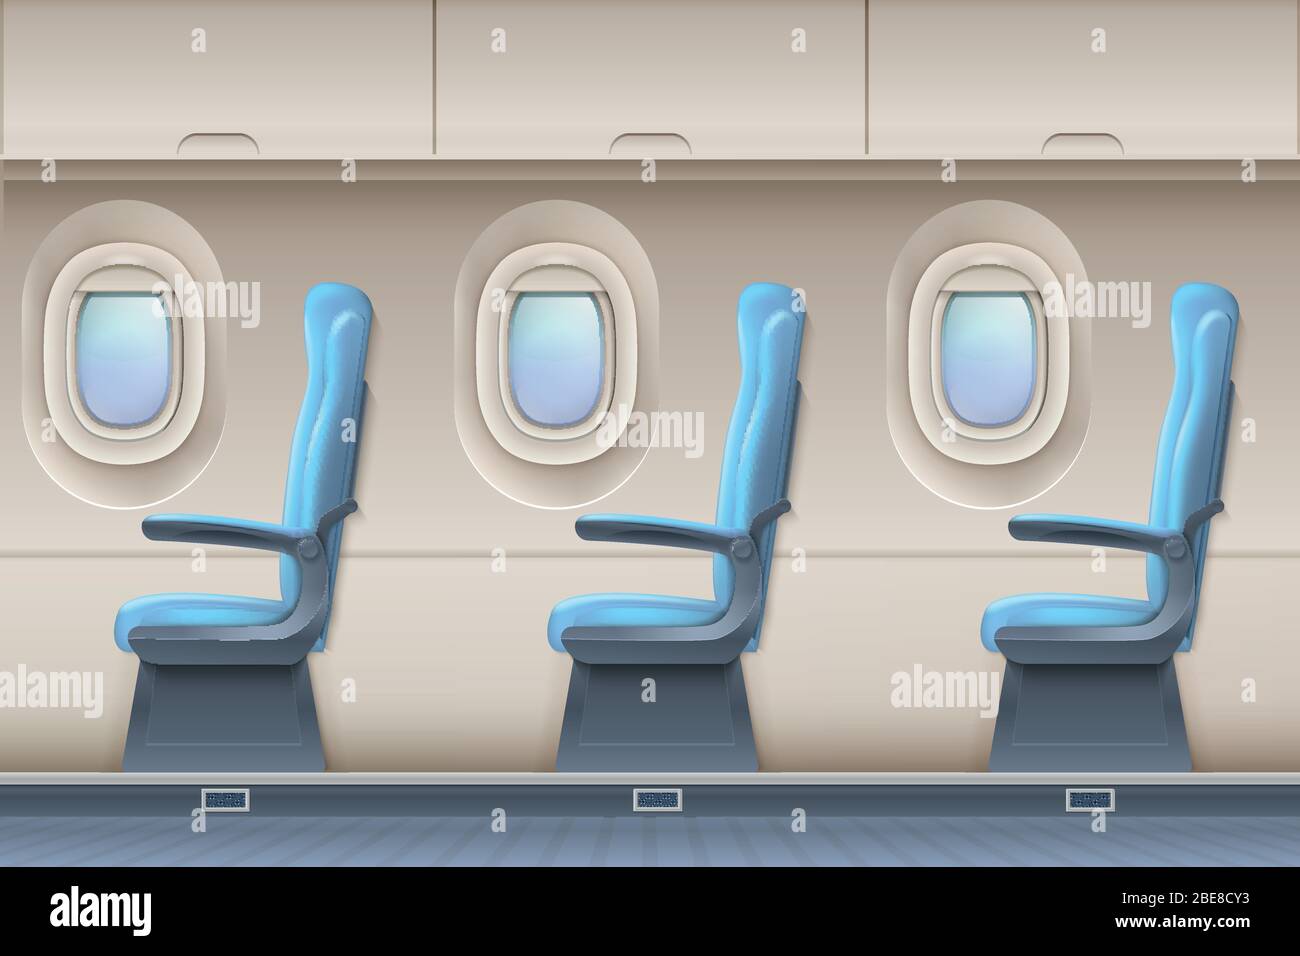 Abitacolo vettore aereo passeggeri. Aereo interno con comode sedie e oblò. Interno di aereo e illustrazione di aeroplano Illustrazione Vettoriale